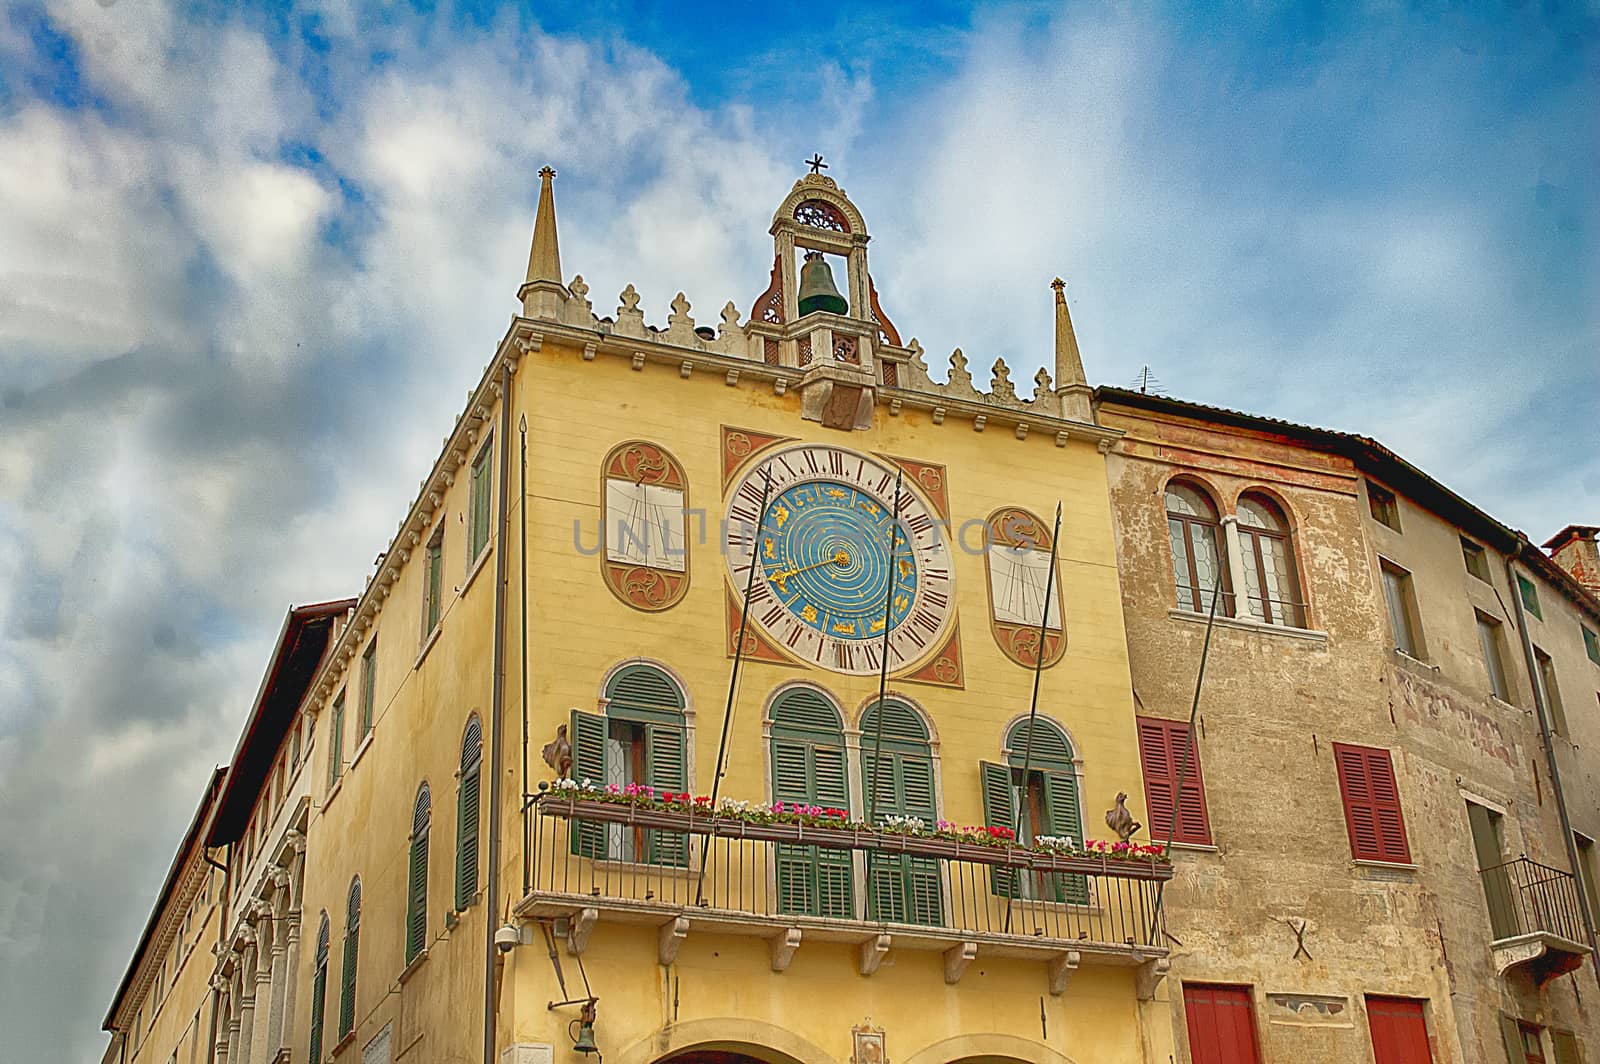 a town hall of Bassano del Grappa